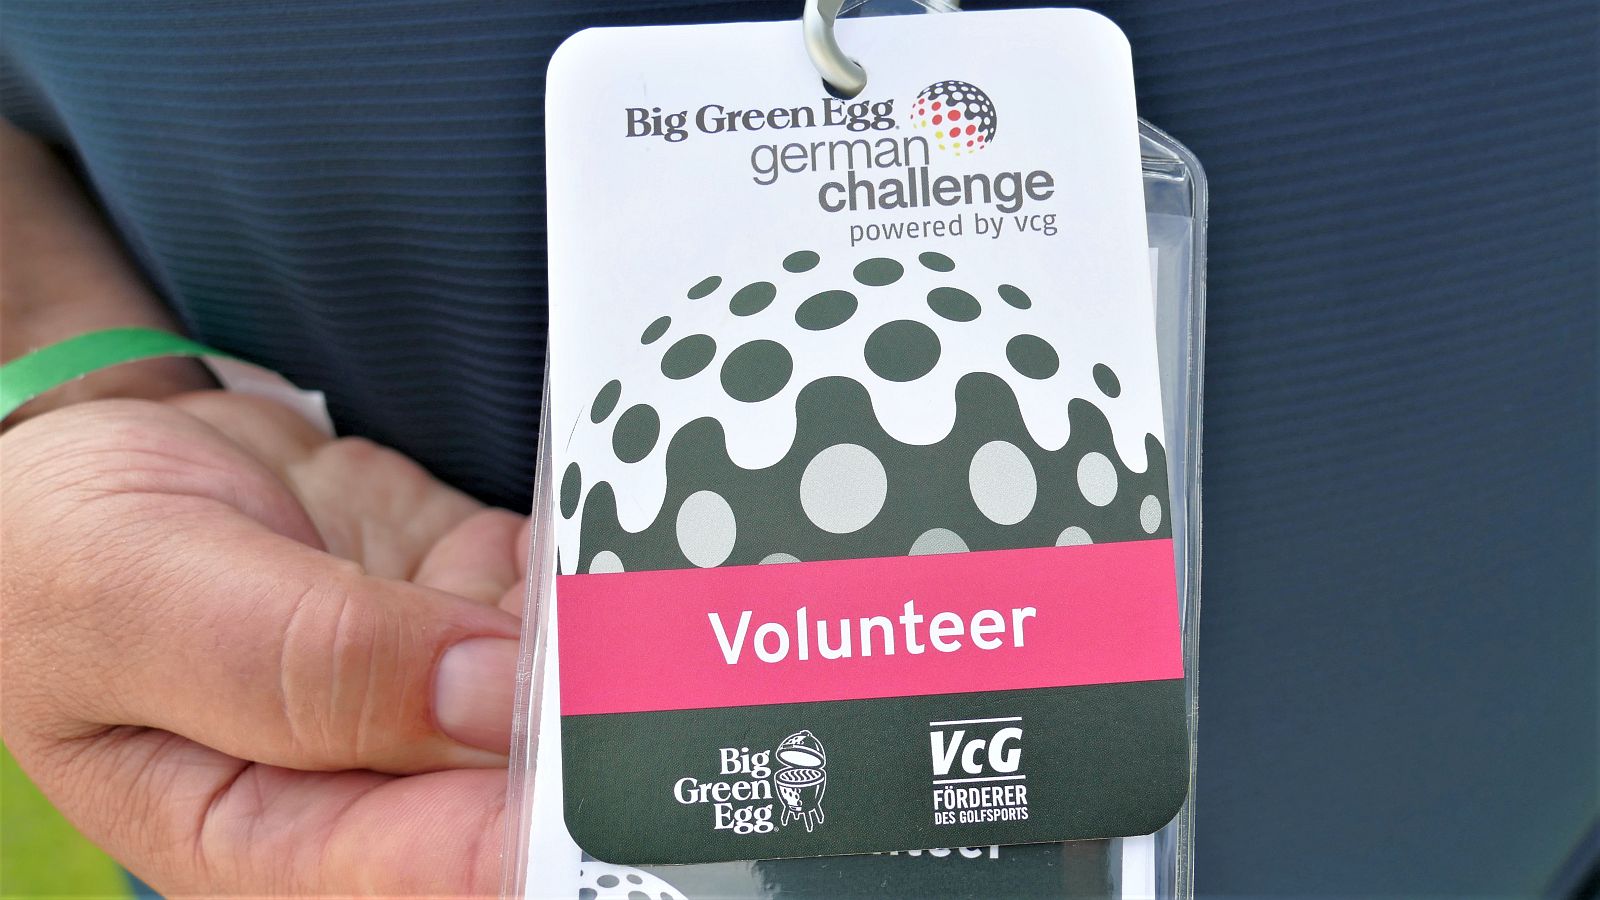 Erkennungszeichen: Die Volunteers der Big Green Egg German Challenge powered by VcG tragen Ausweise mit roten Markierungen.